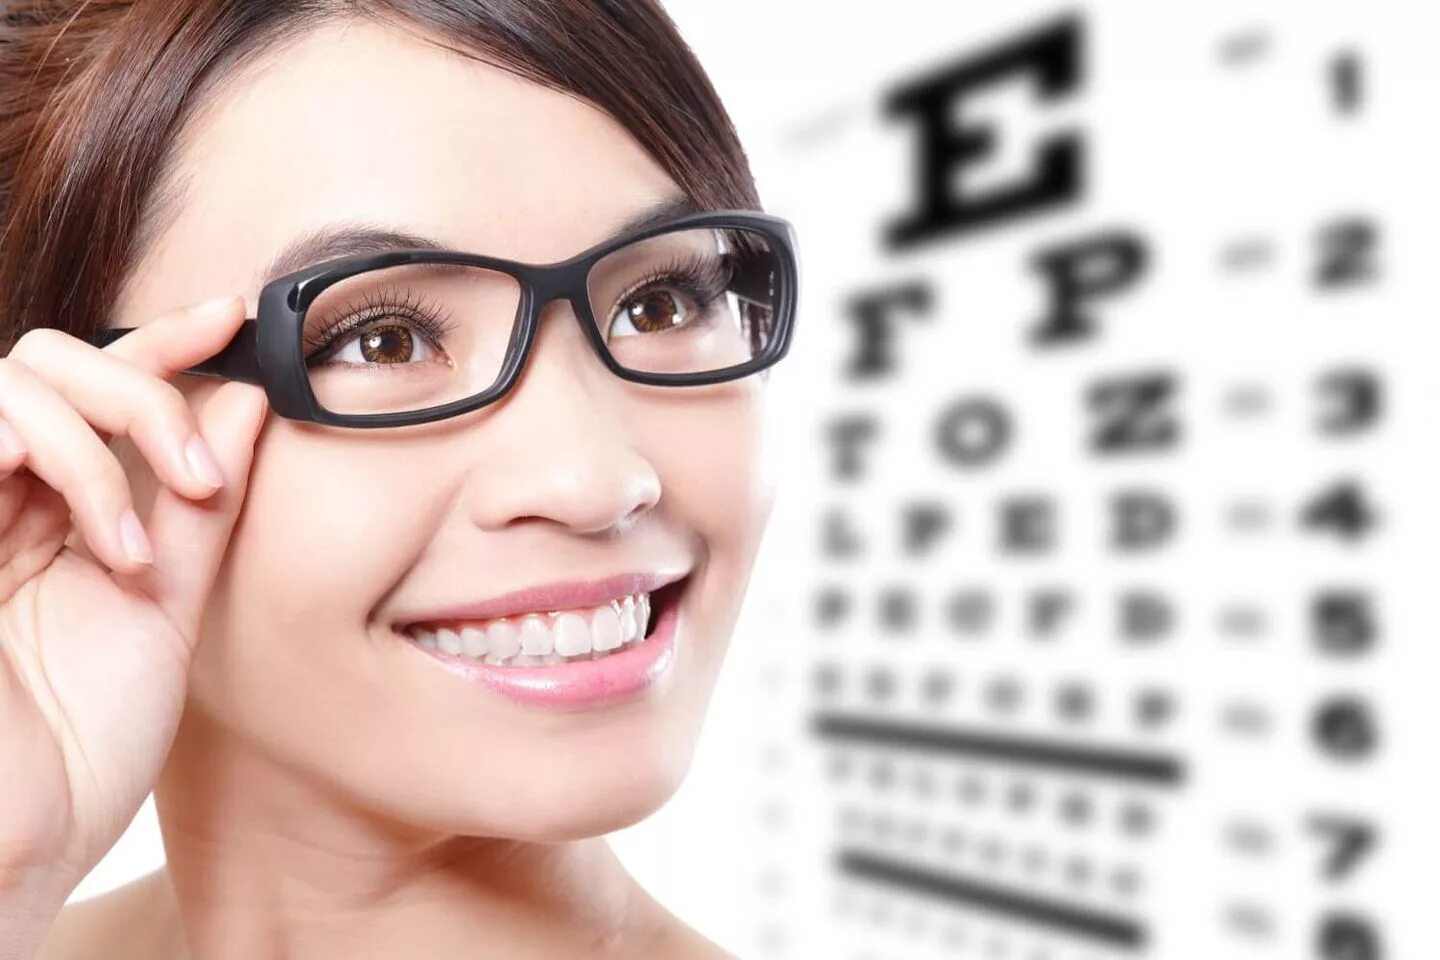 Оптика очки для зрения. Реклама очков для зрения. Девушка в очках для зрения. Очки для дальнозоркости.